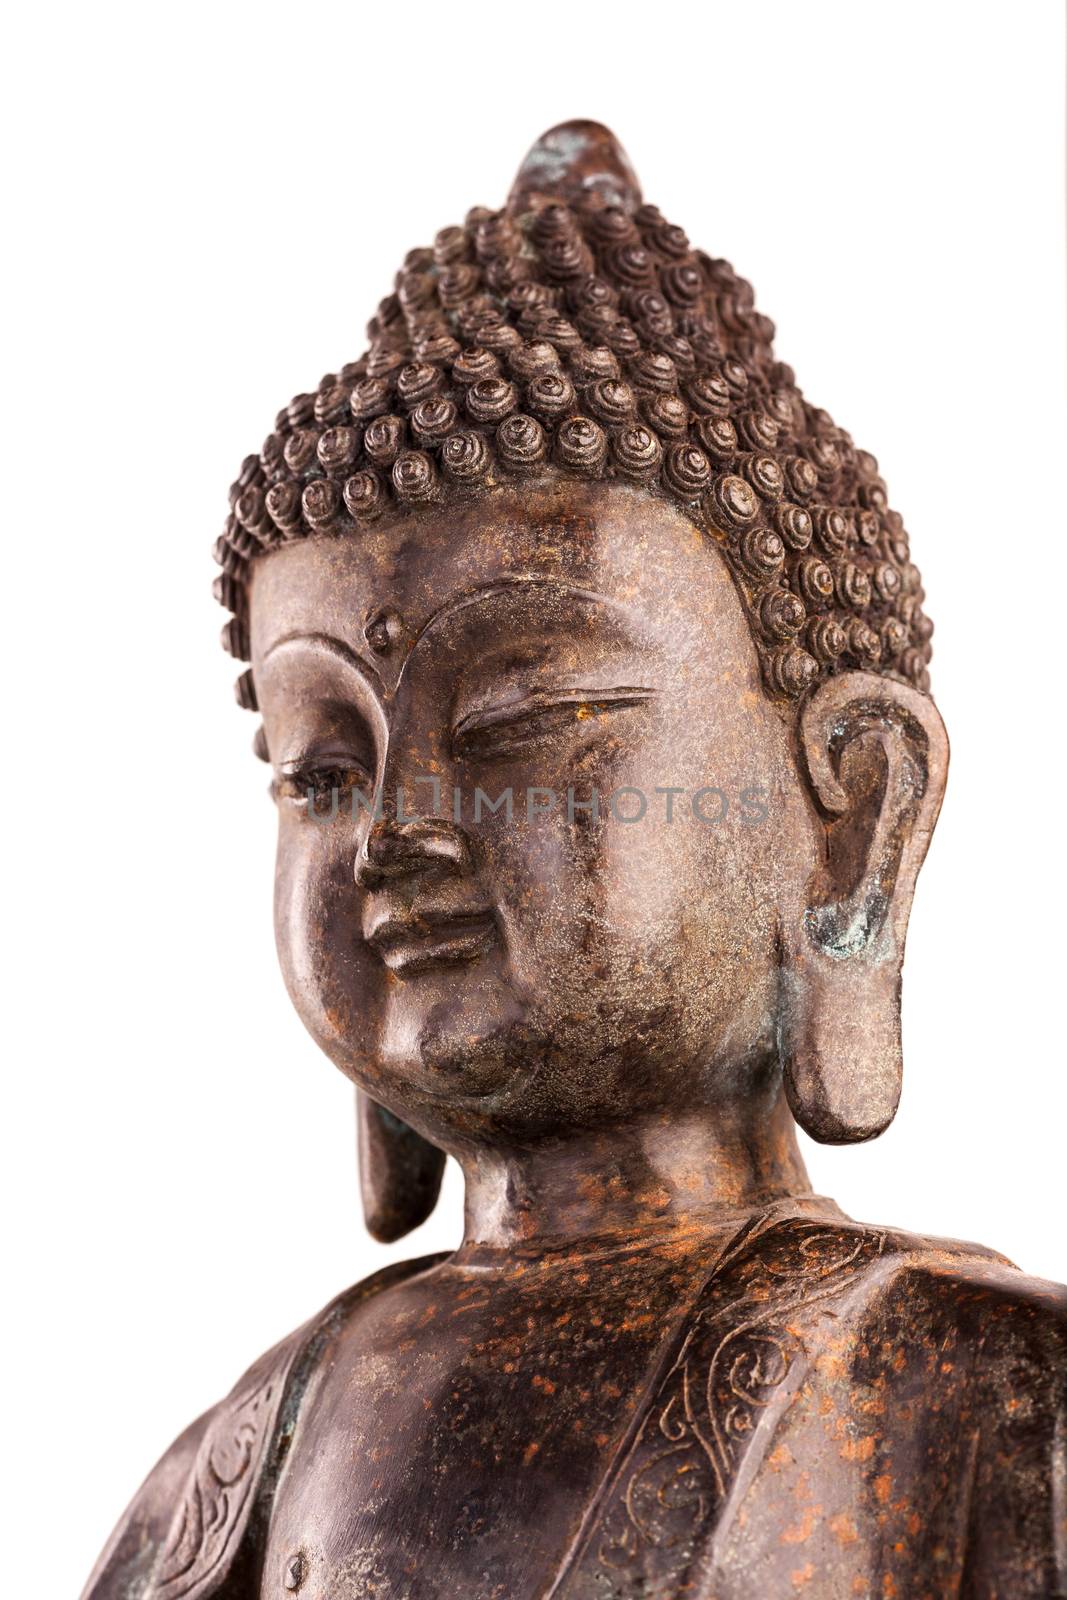 Head of Buddha. by dymov